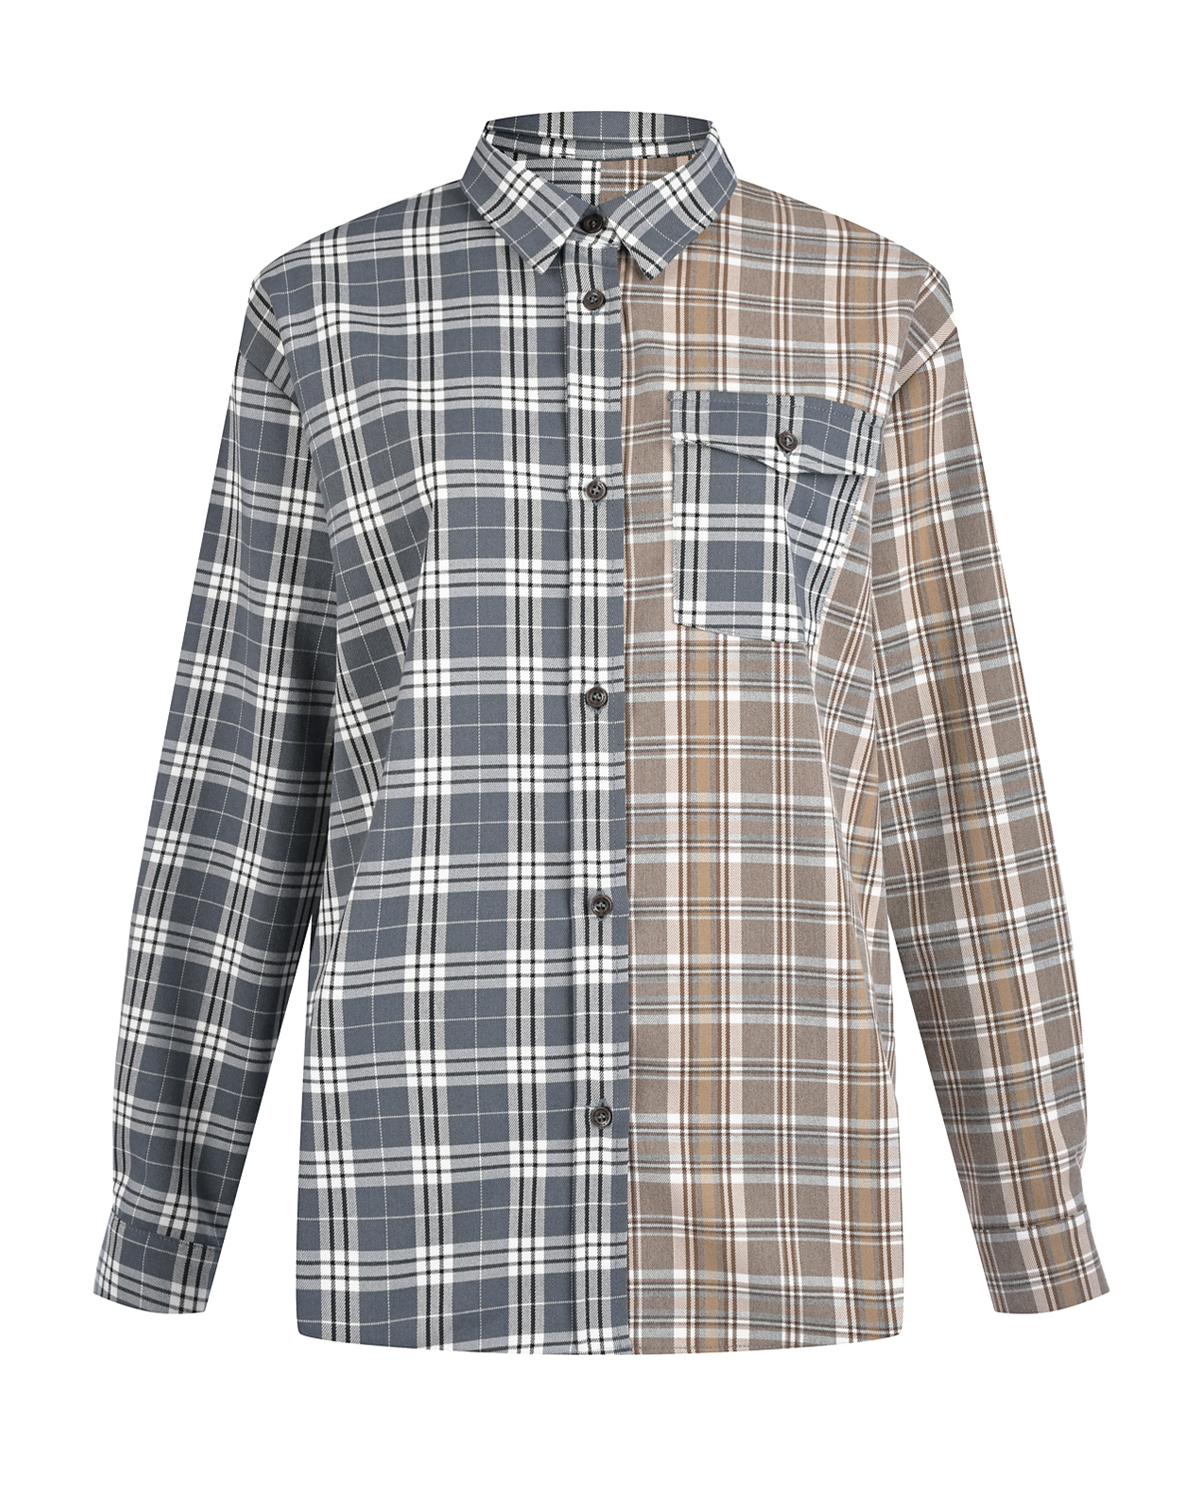 Комбинированная рубашка в клетку Dan Maralex, размер 46, цвет серый - фото 1